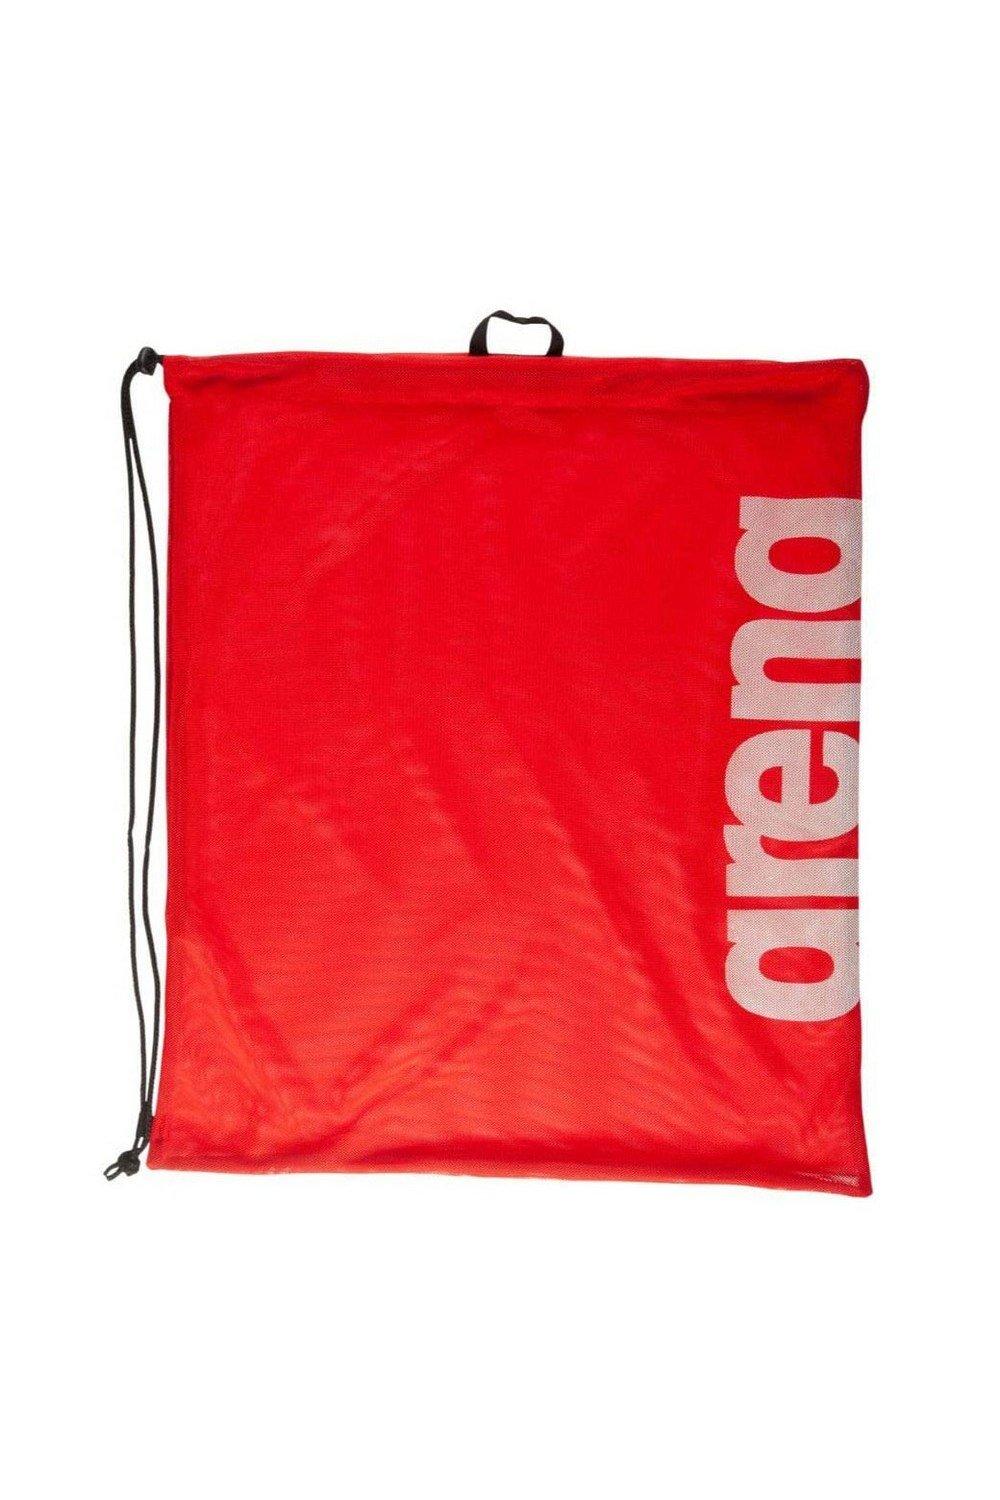 Сетчатая сумка на шнурке для плавания Swim Team Arena, красный сетка для переноски 1 мяча